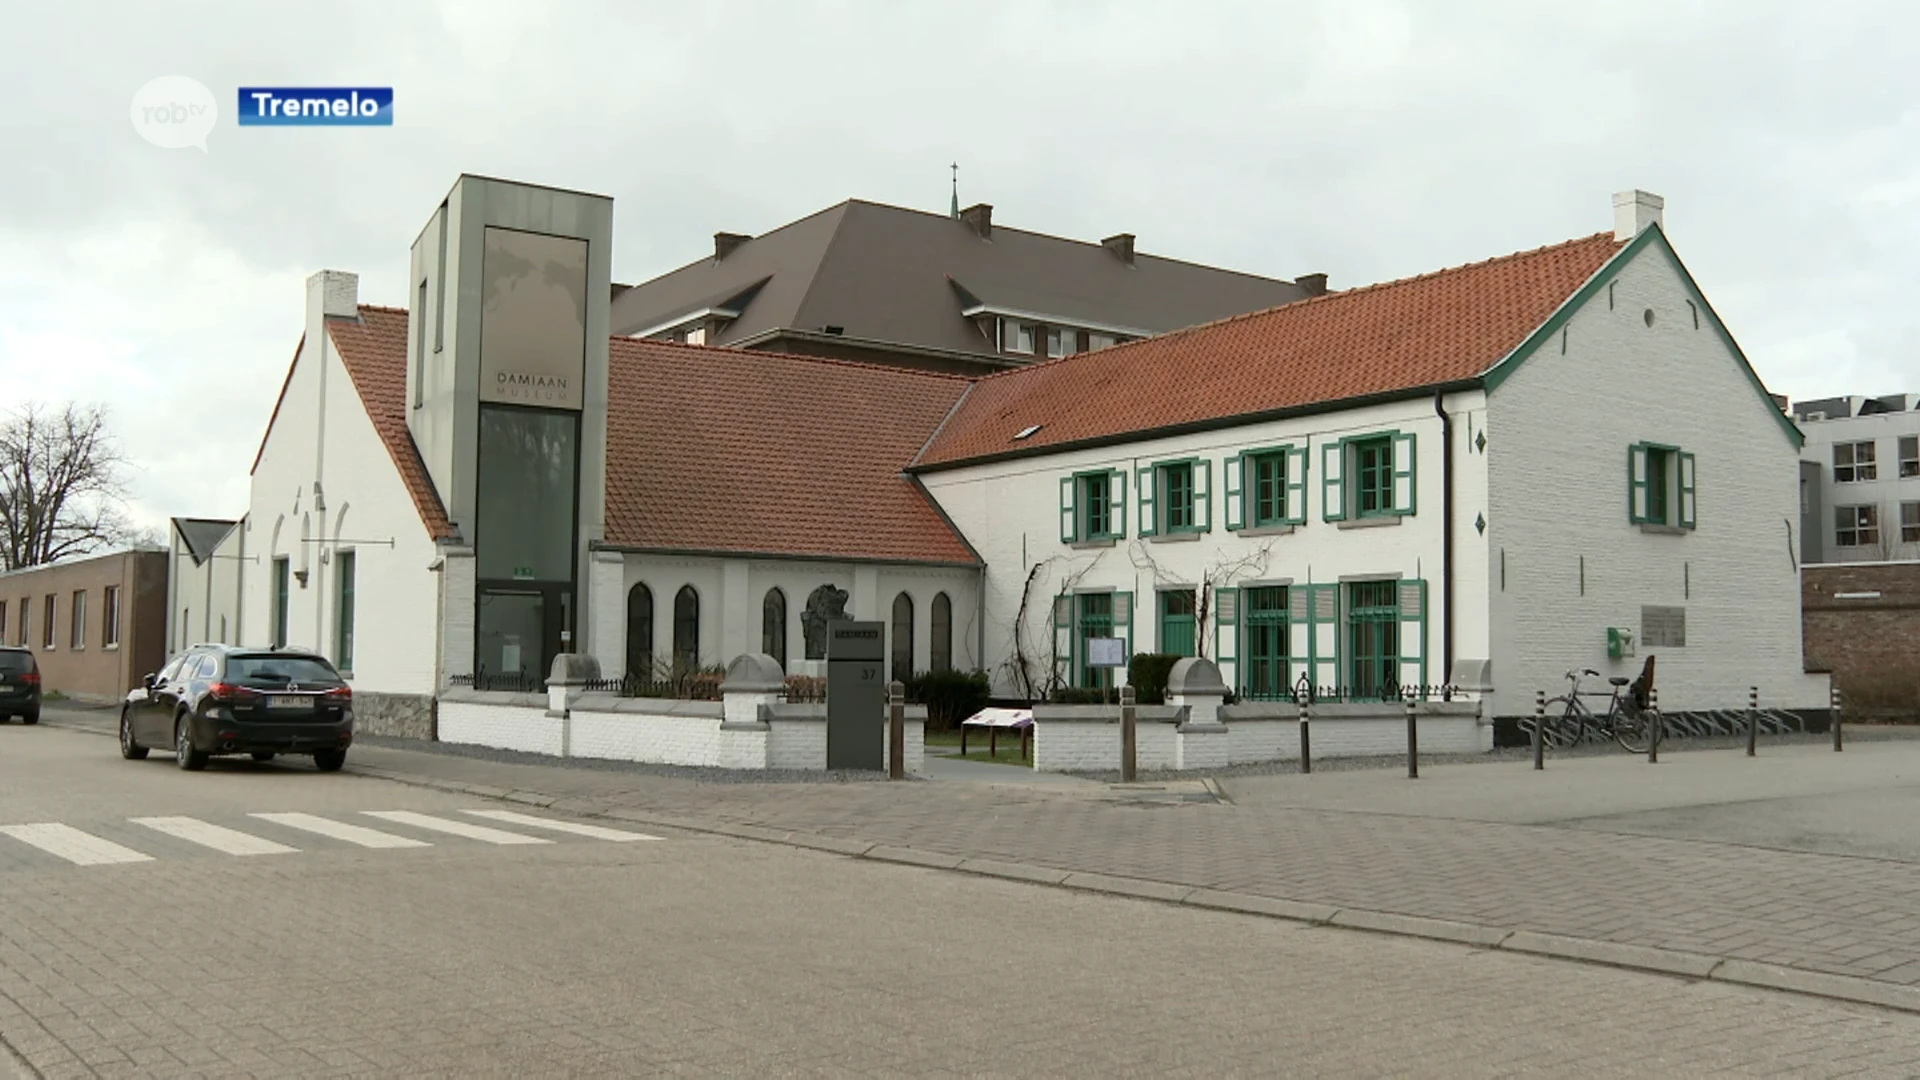 Damiaanmuseum in handen van gemeente Tremelo: "Willen kwaliteitslabel binnenhalen en investeren in de toekomst"